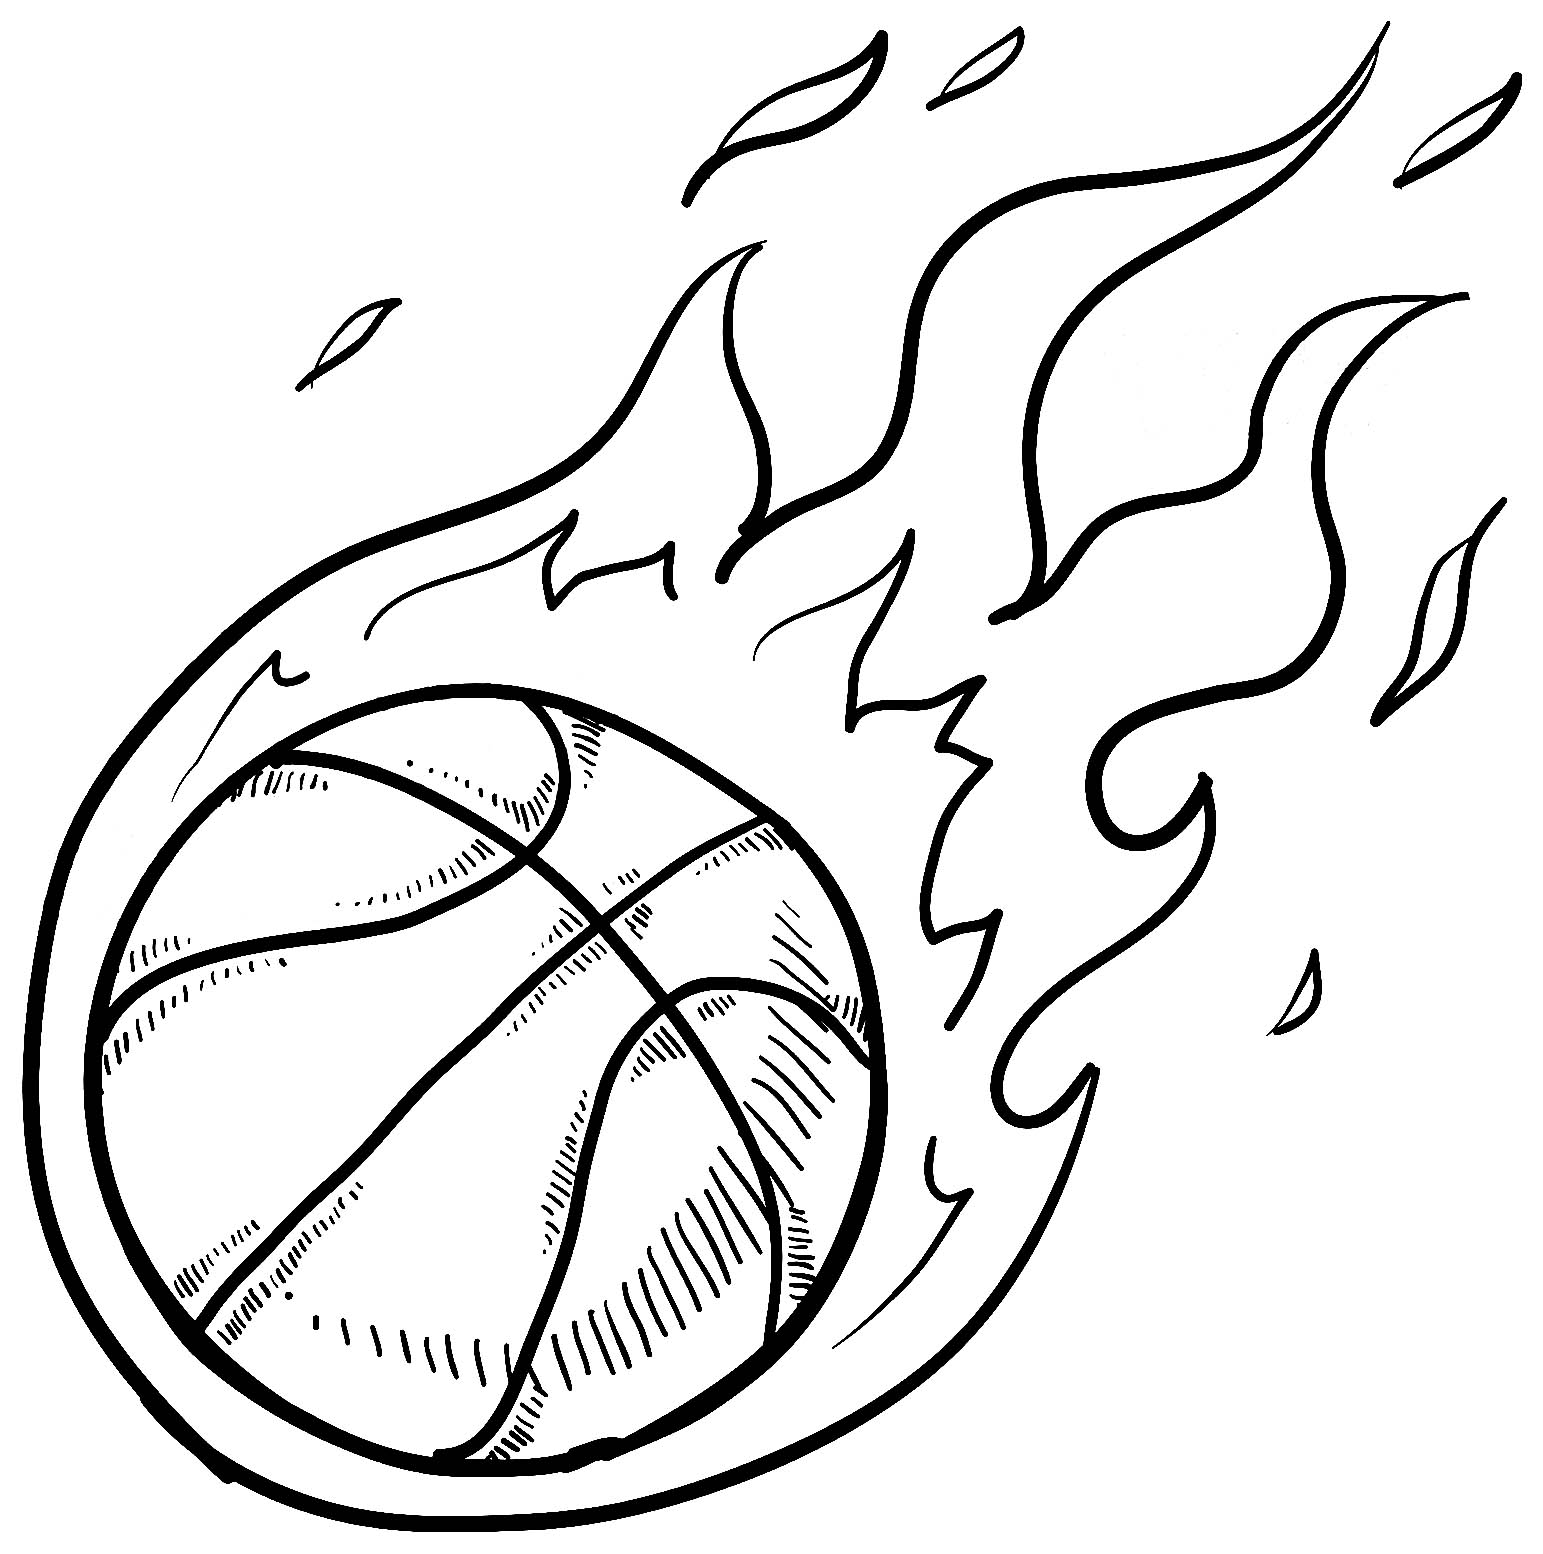 basketball printable